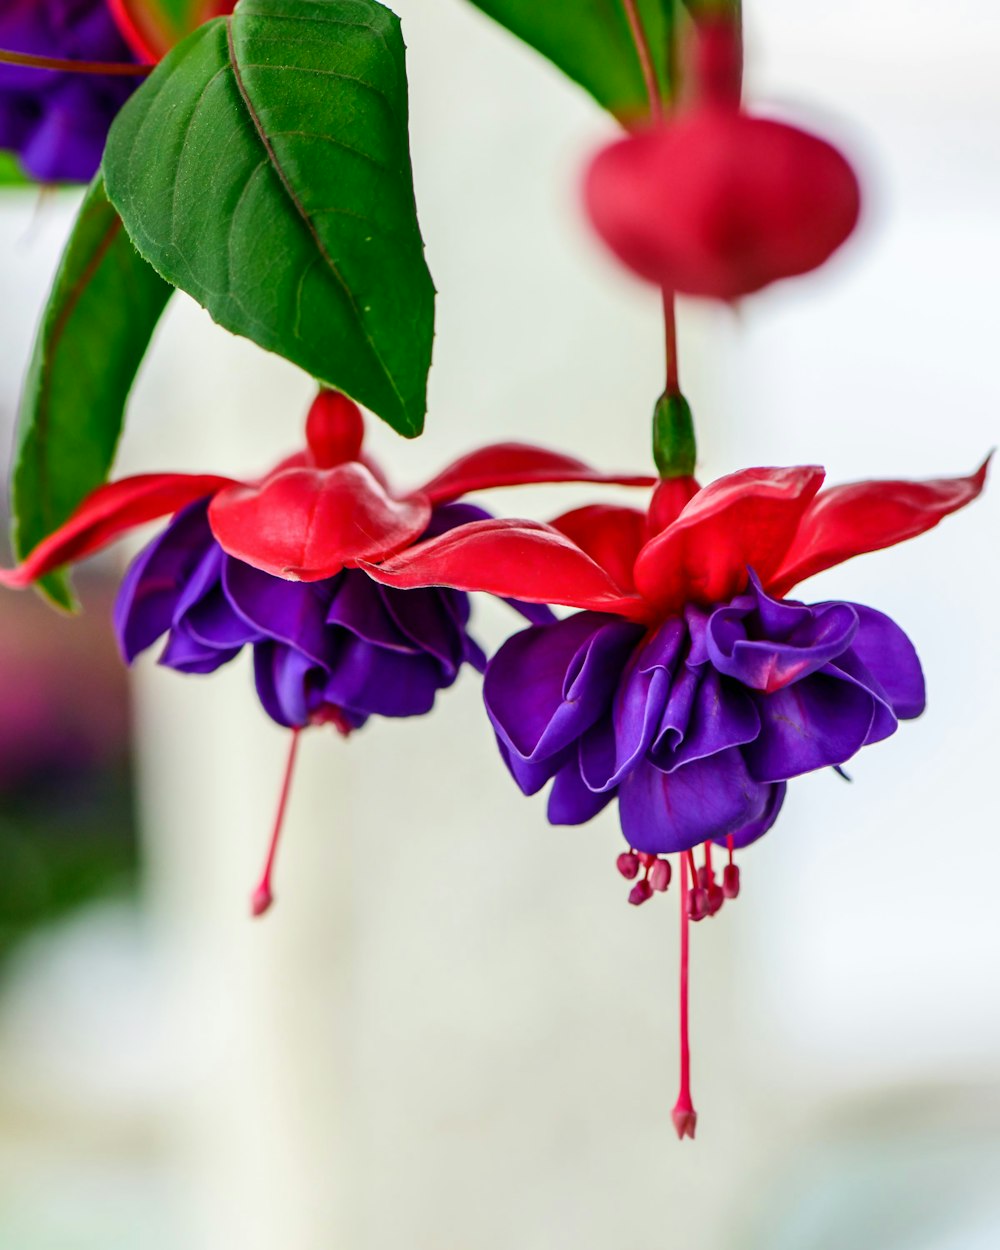 활짝 핀 보라색과 빨간색 자홍색 꽃의 선택적 초점 사진